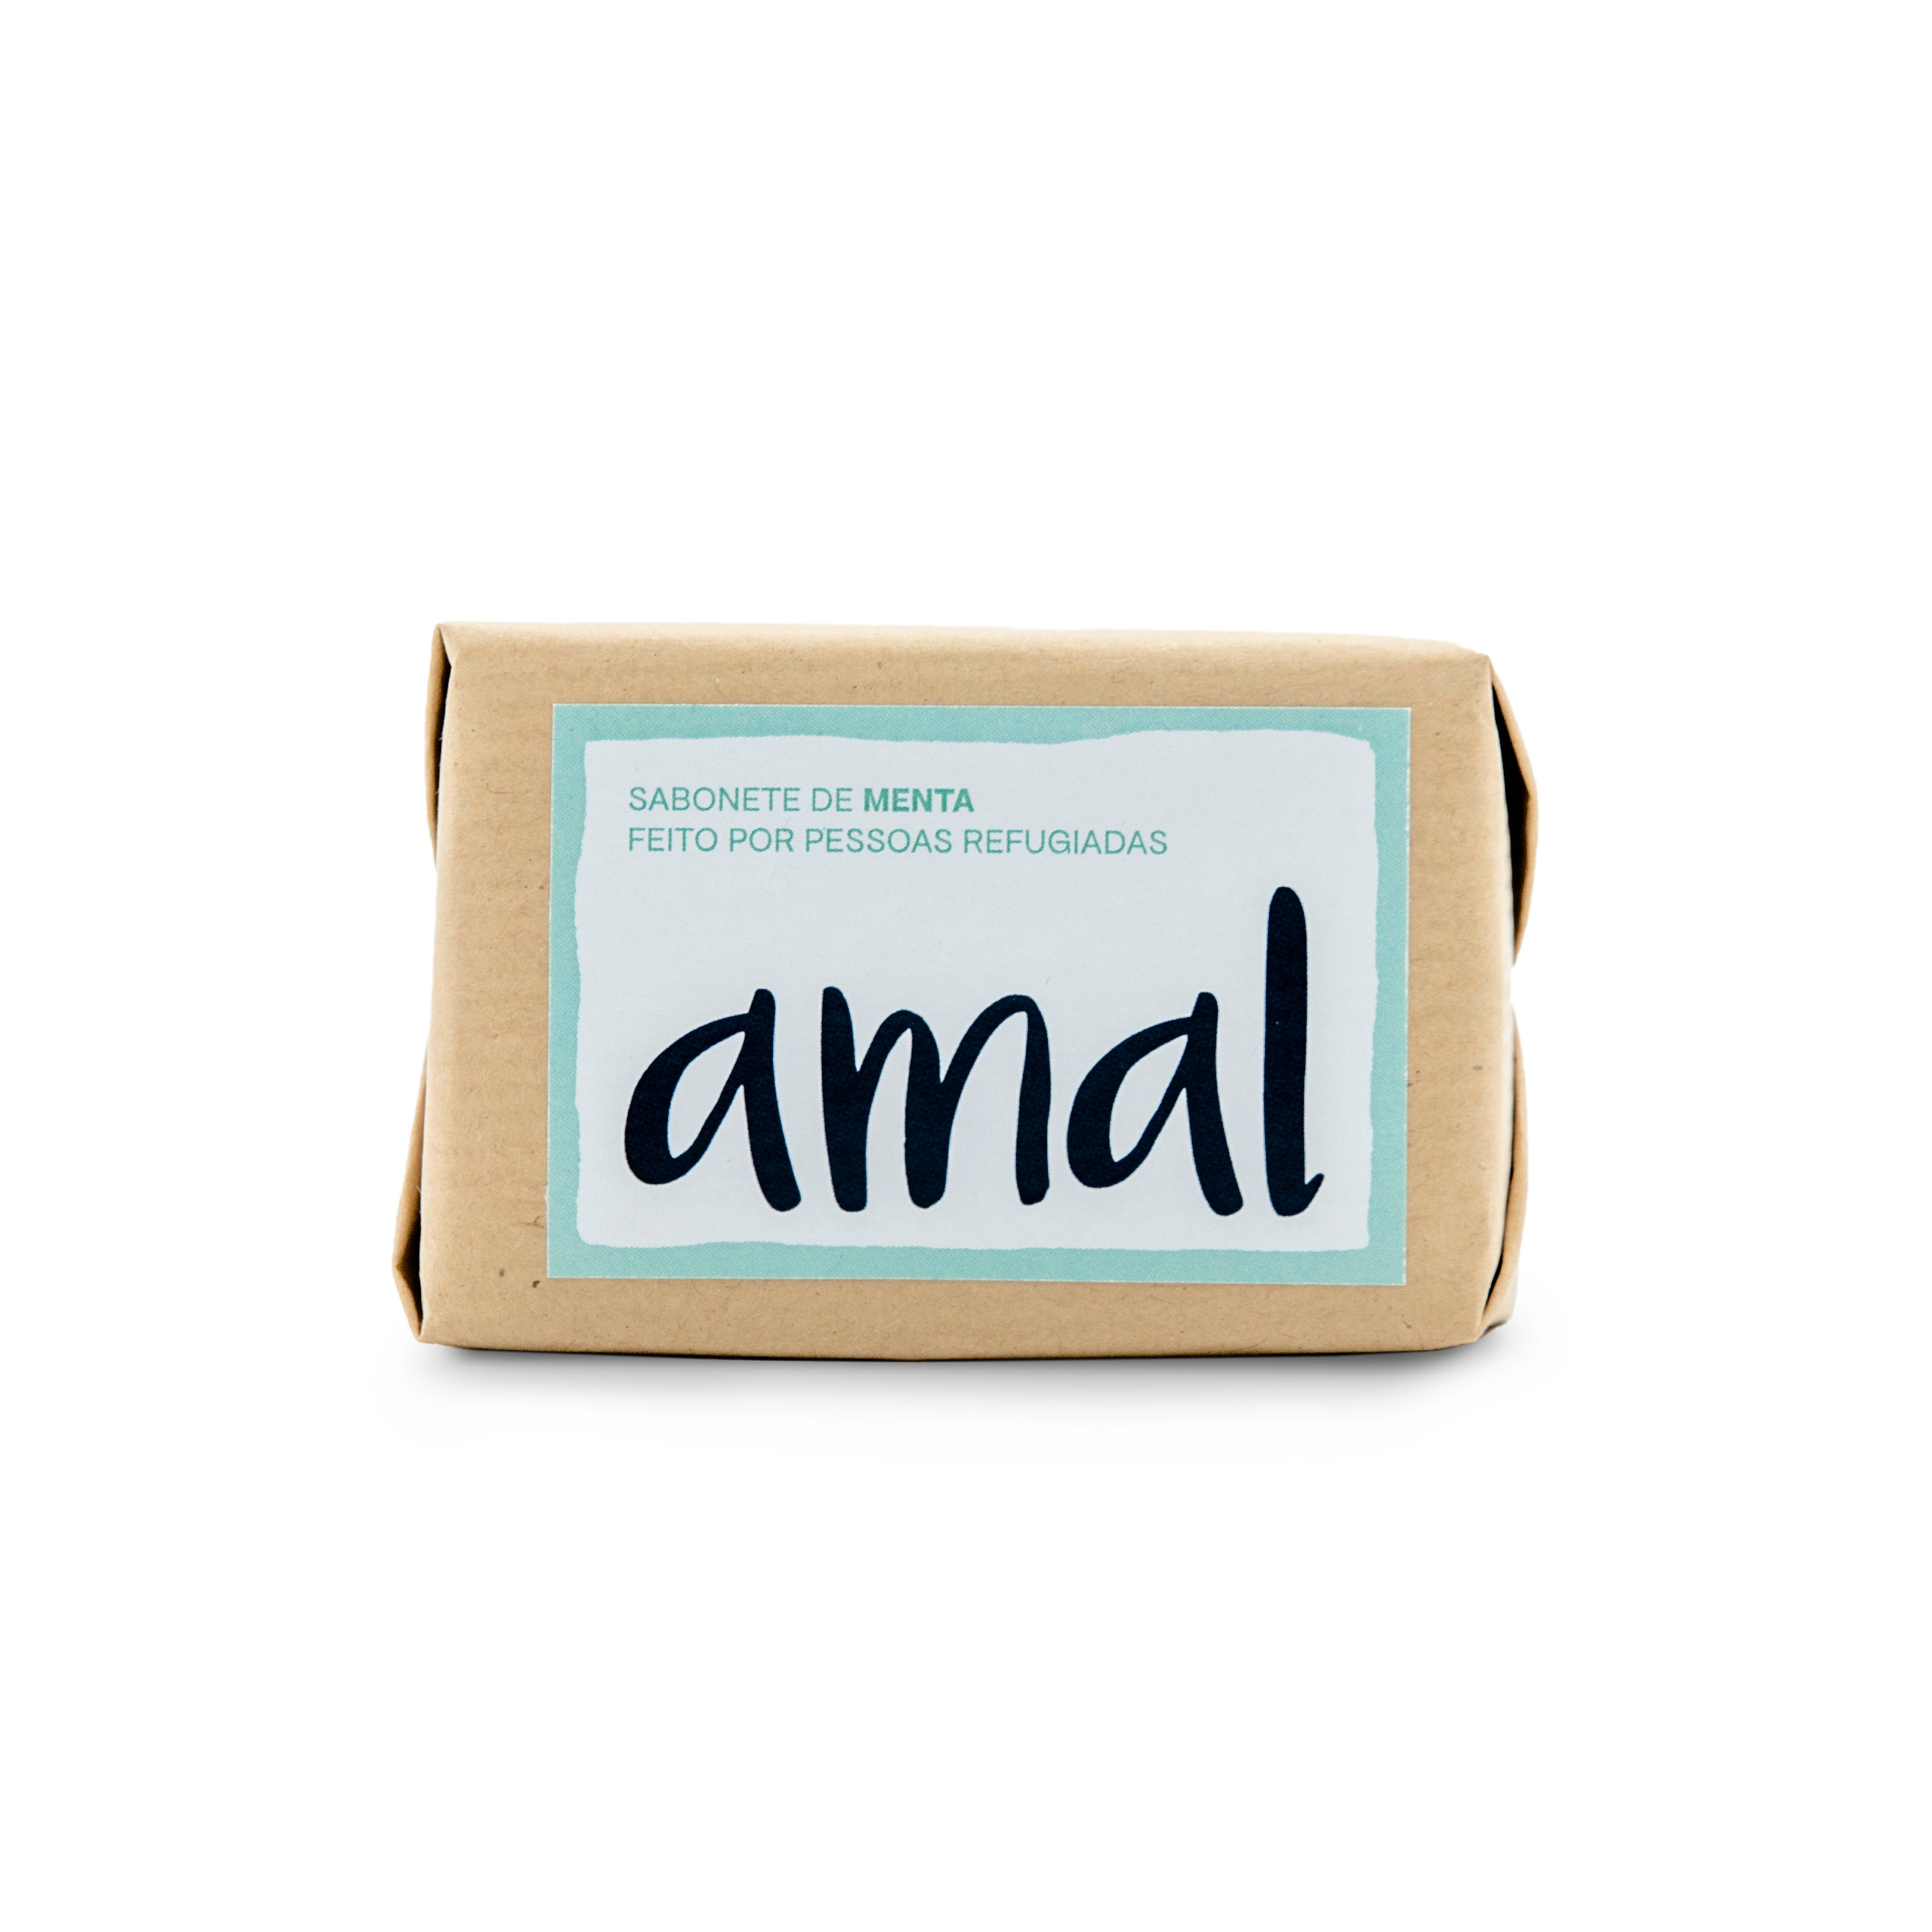 Sabonete de Menta da AMAL SOAP feito por pessoas refugiadas